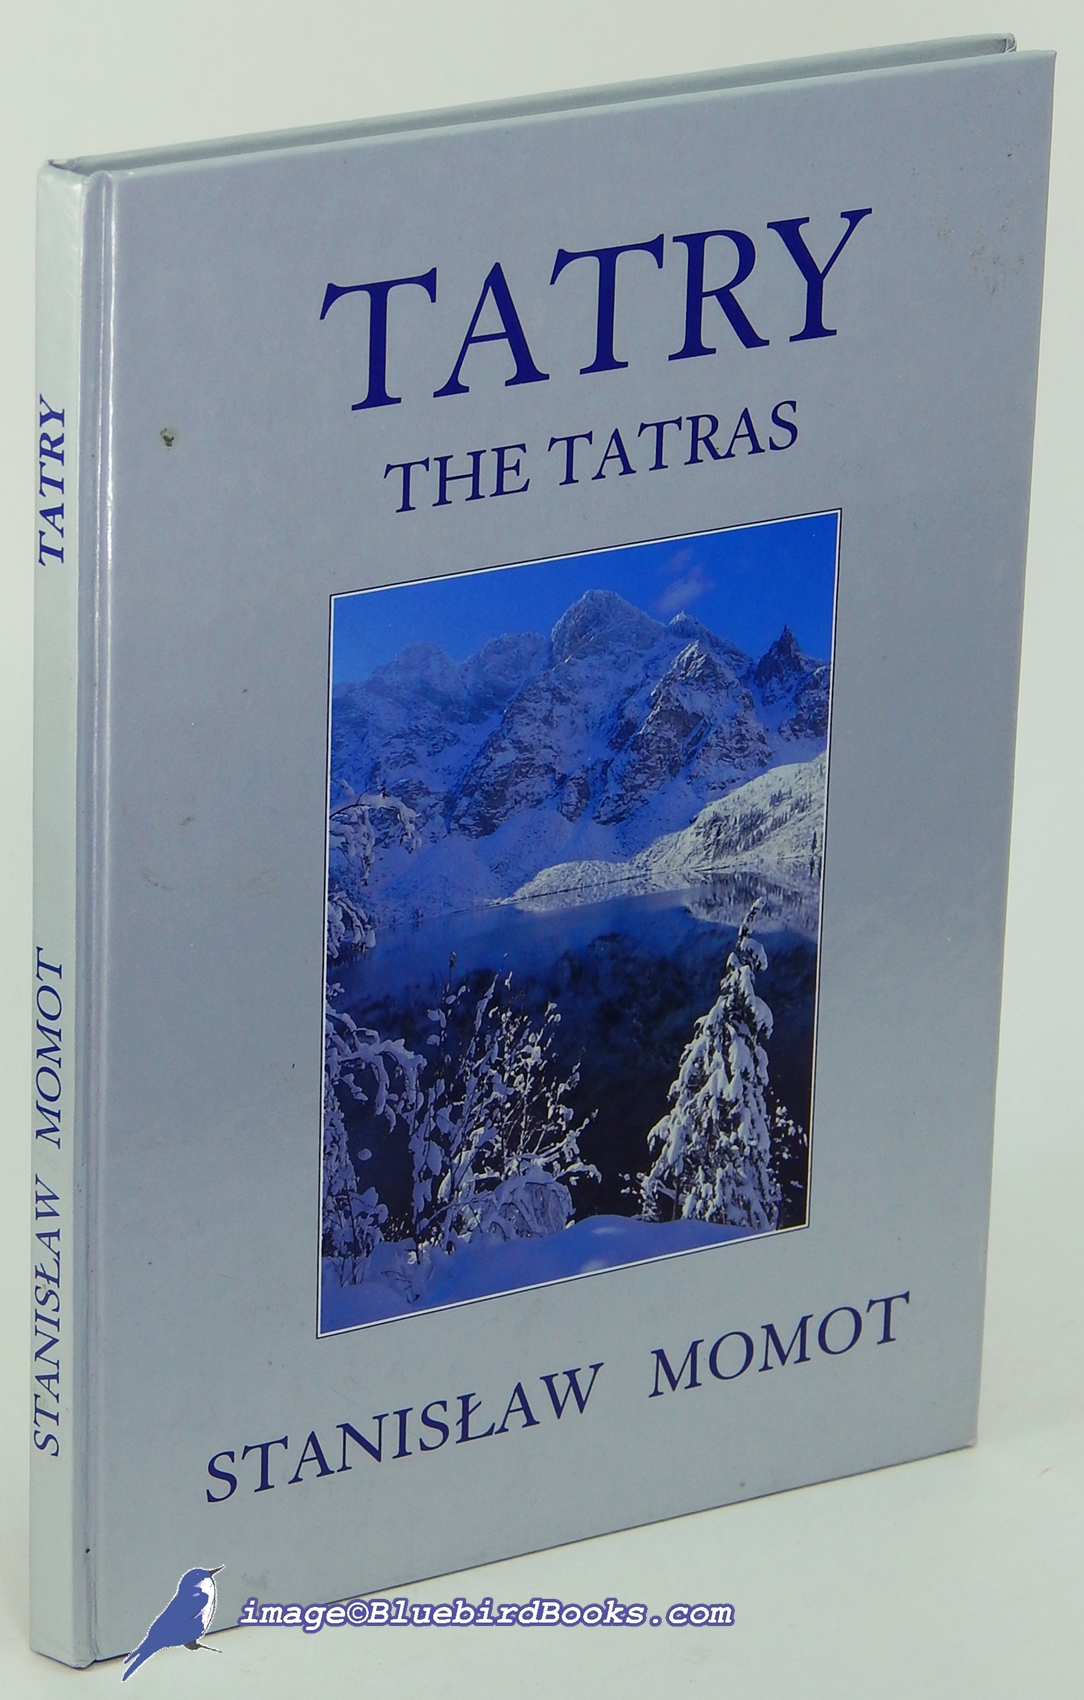 MOMOT, STANISLAW - Tatry: The Tatras